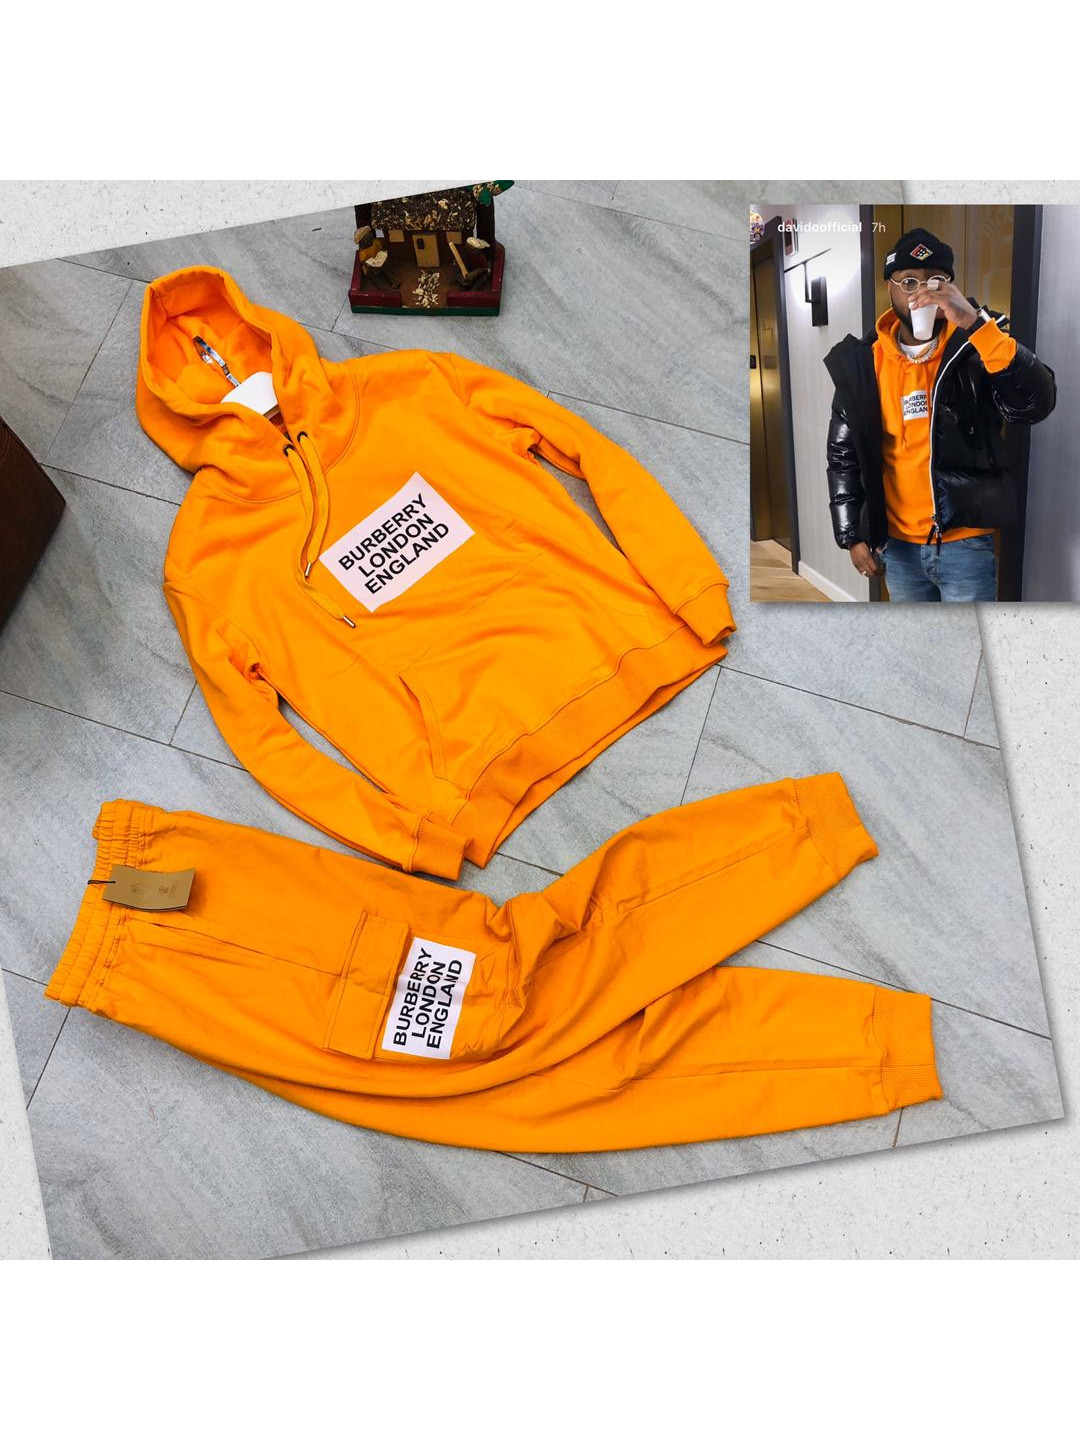 orange burberry hoodie